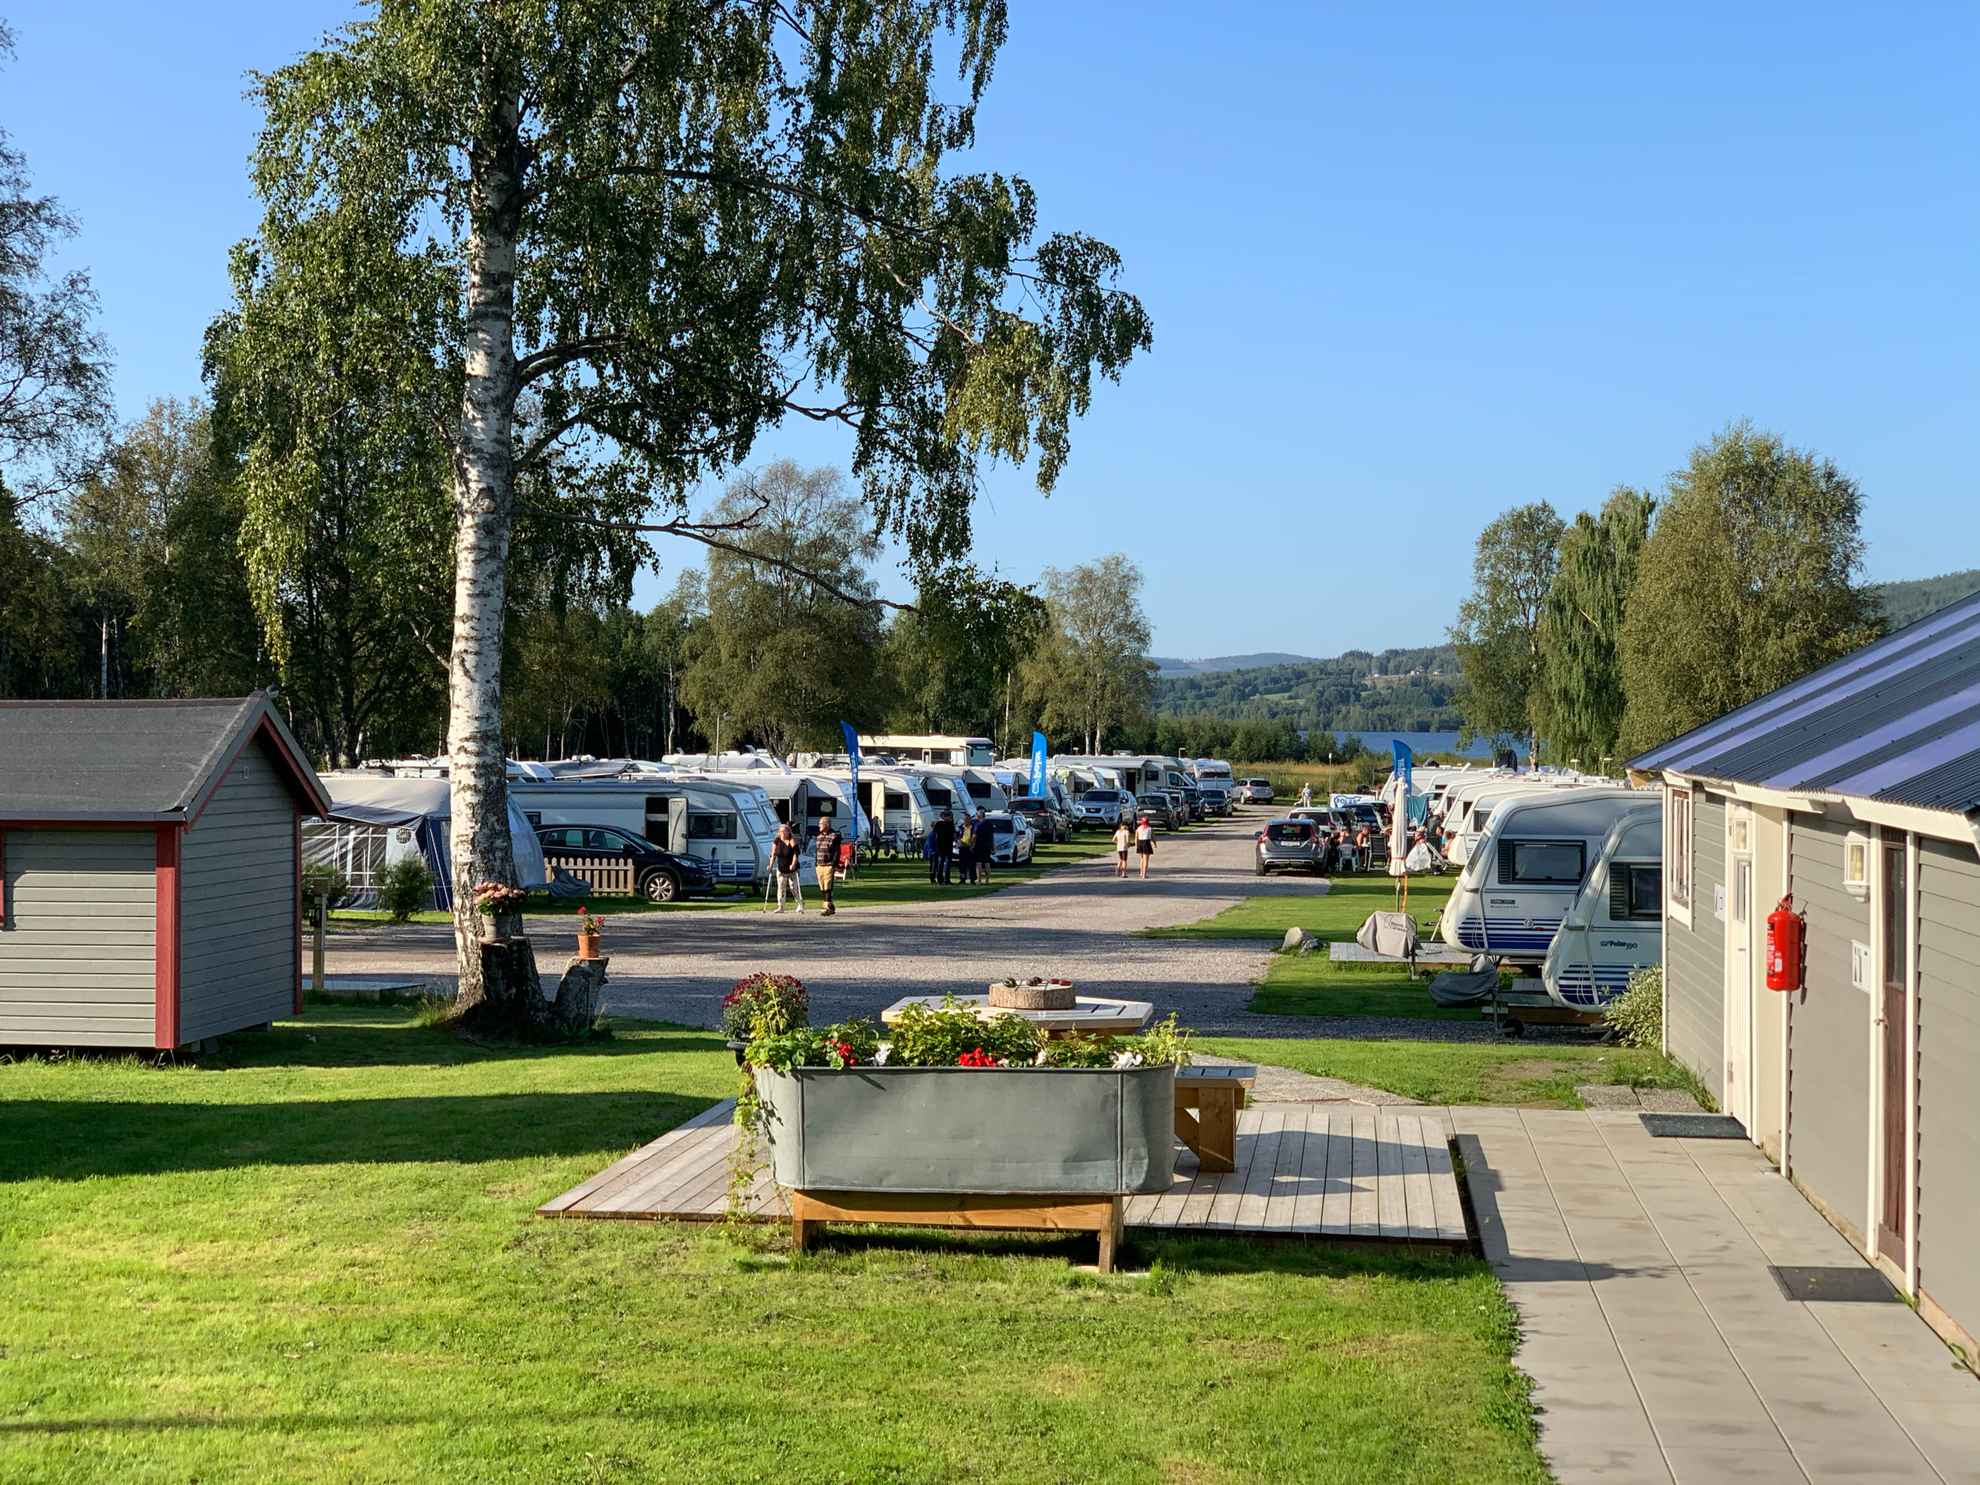 Caravans parked in a row at Överhörnäs Camping